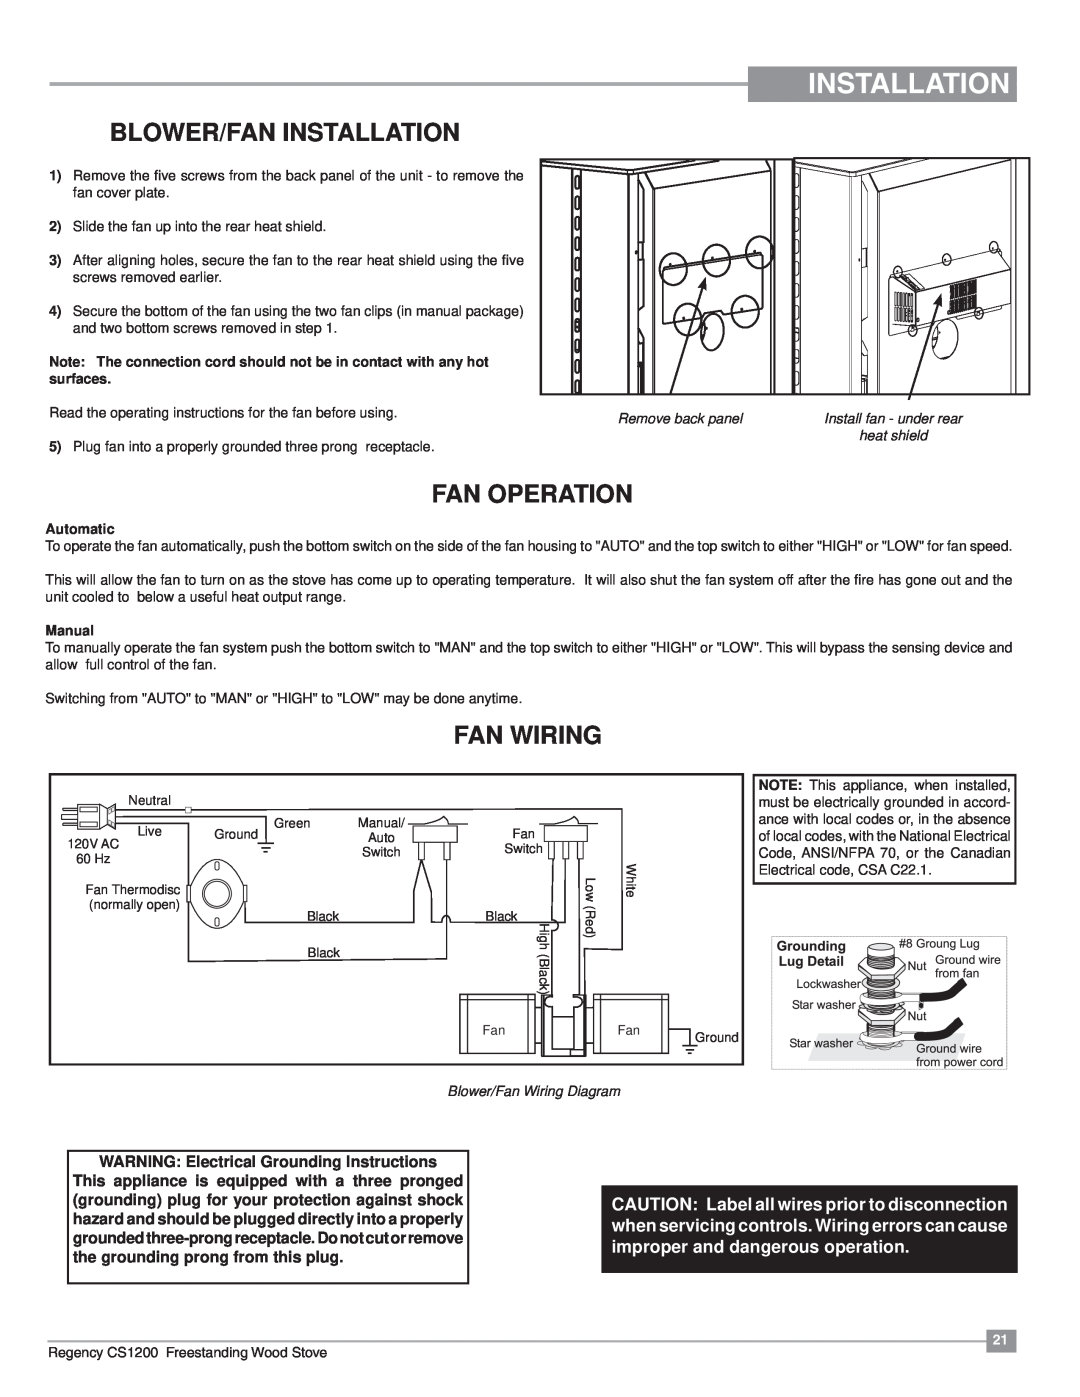 Regency CS1200 Blower/Fan Installation, Fan Operation, Fan Wiring, WARNING Electrical Grounding Instructions, Manual 